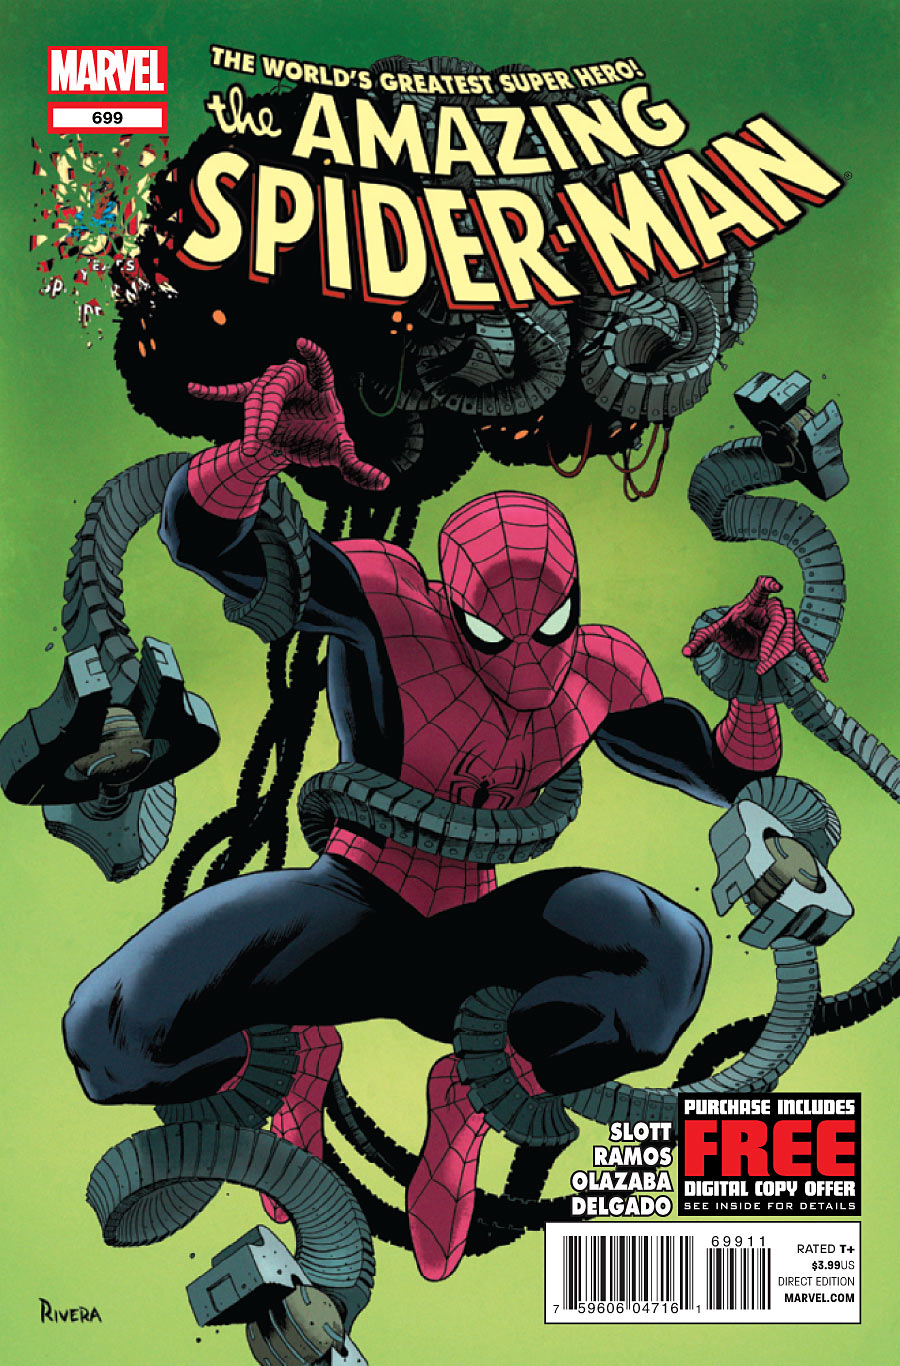 Amazing Spider-Man Vol. 1 #699